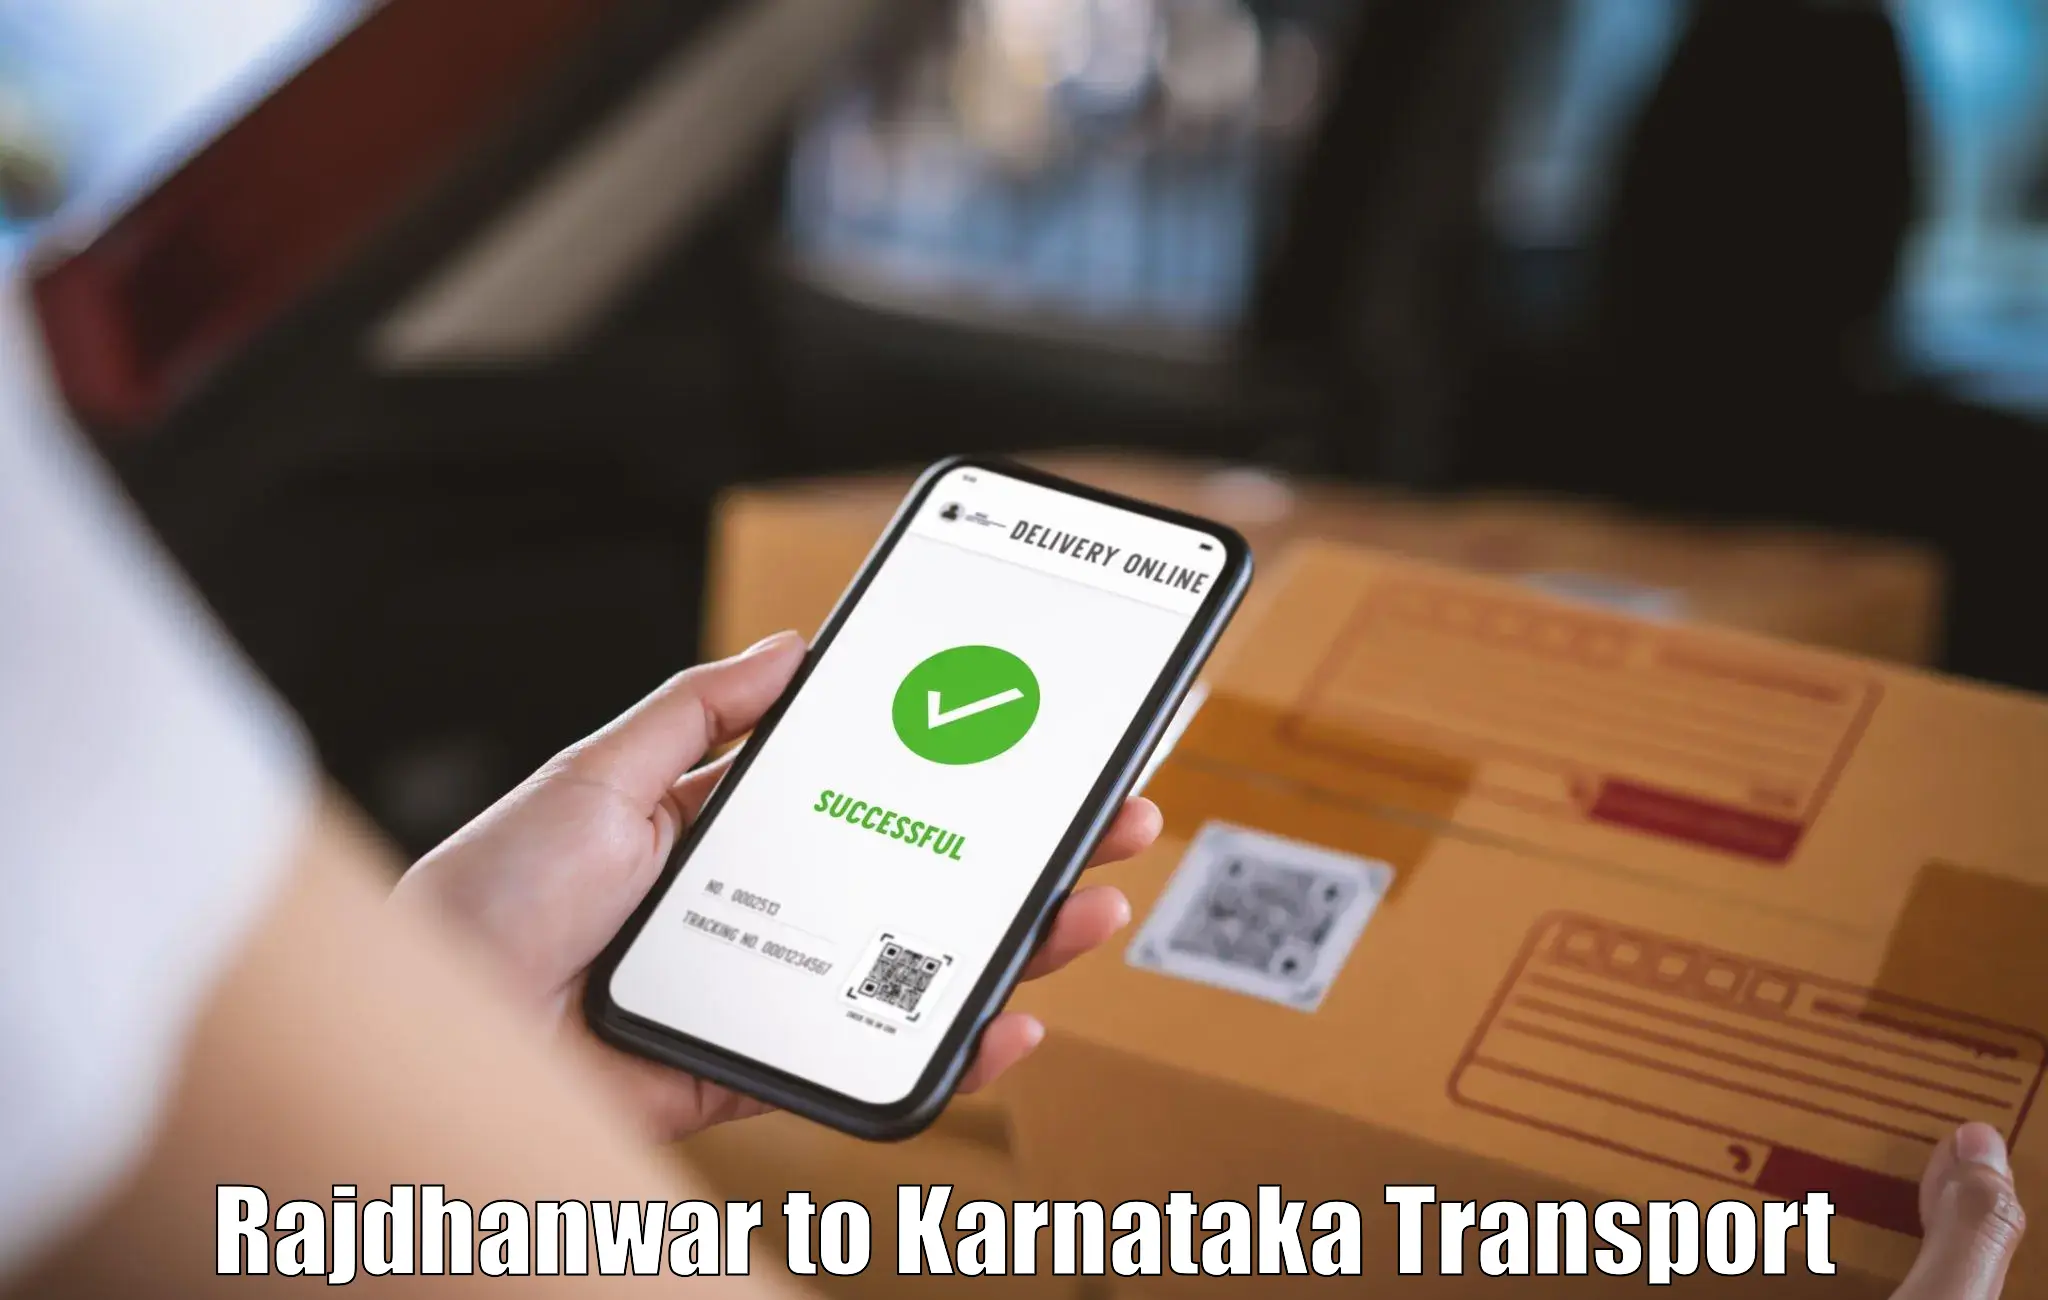 Furniture transport service Rajdhanwar to Dakshina Kannada